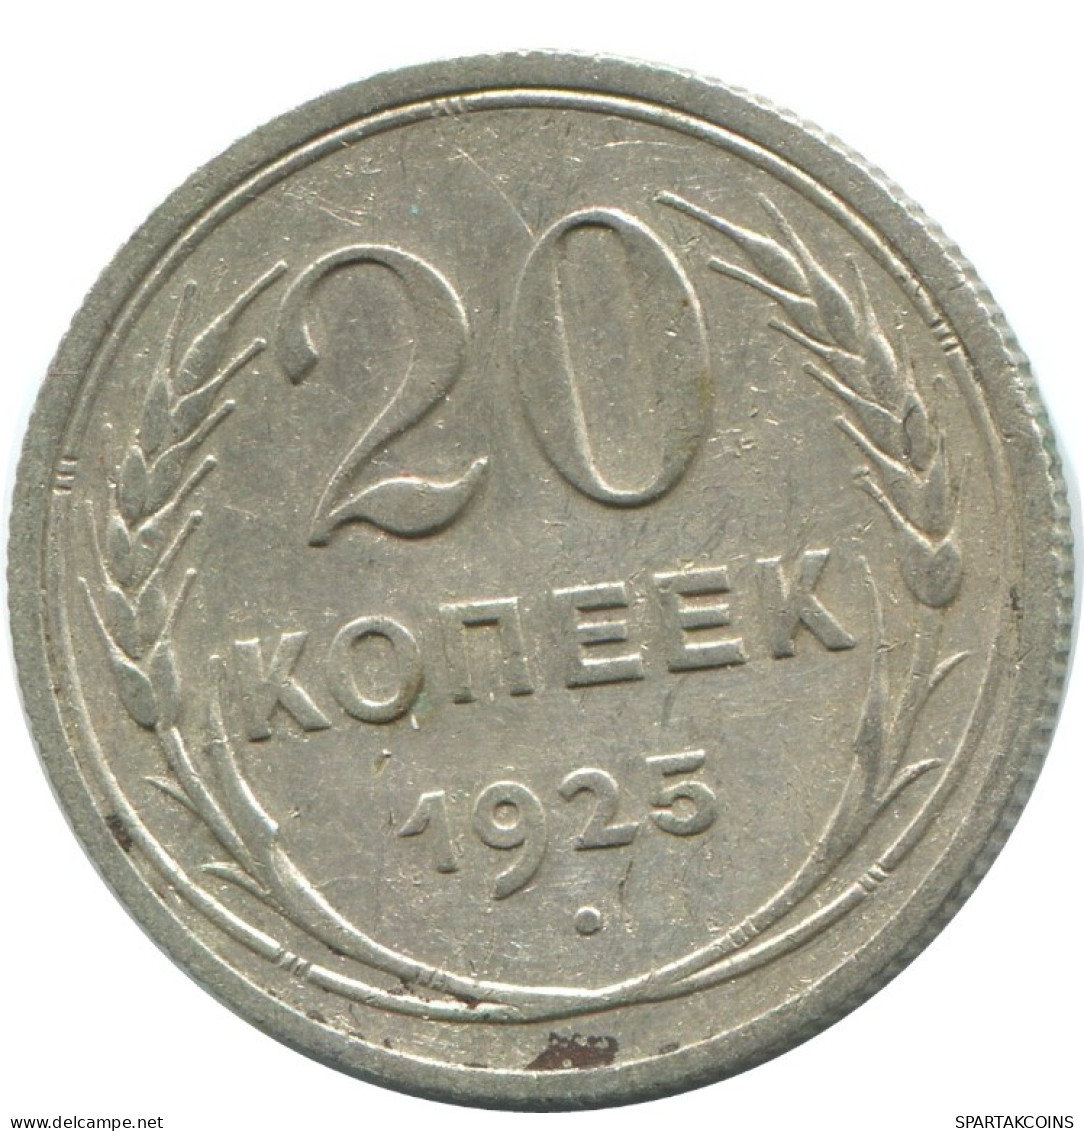 20 KOPEKS 1925 RUSSLAND RUSSIA USSR SILBER Münze HIGH GRADE #AF348.4.D.A - Russie